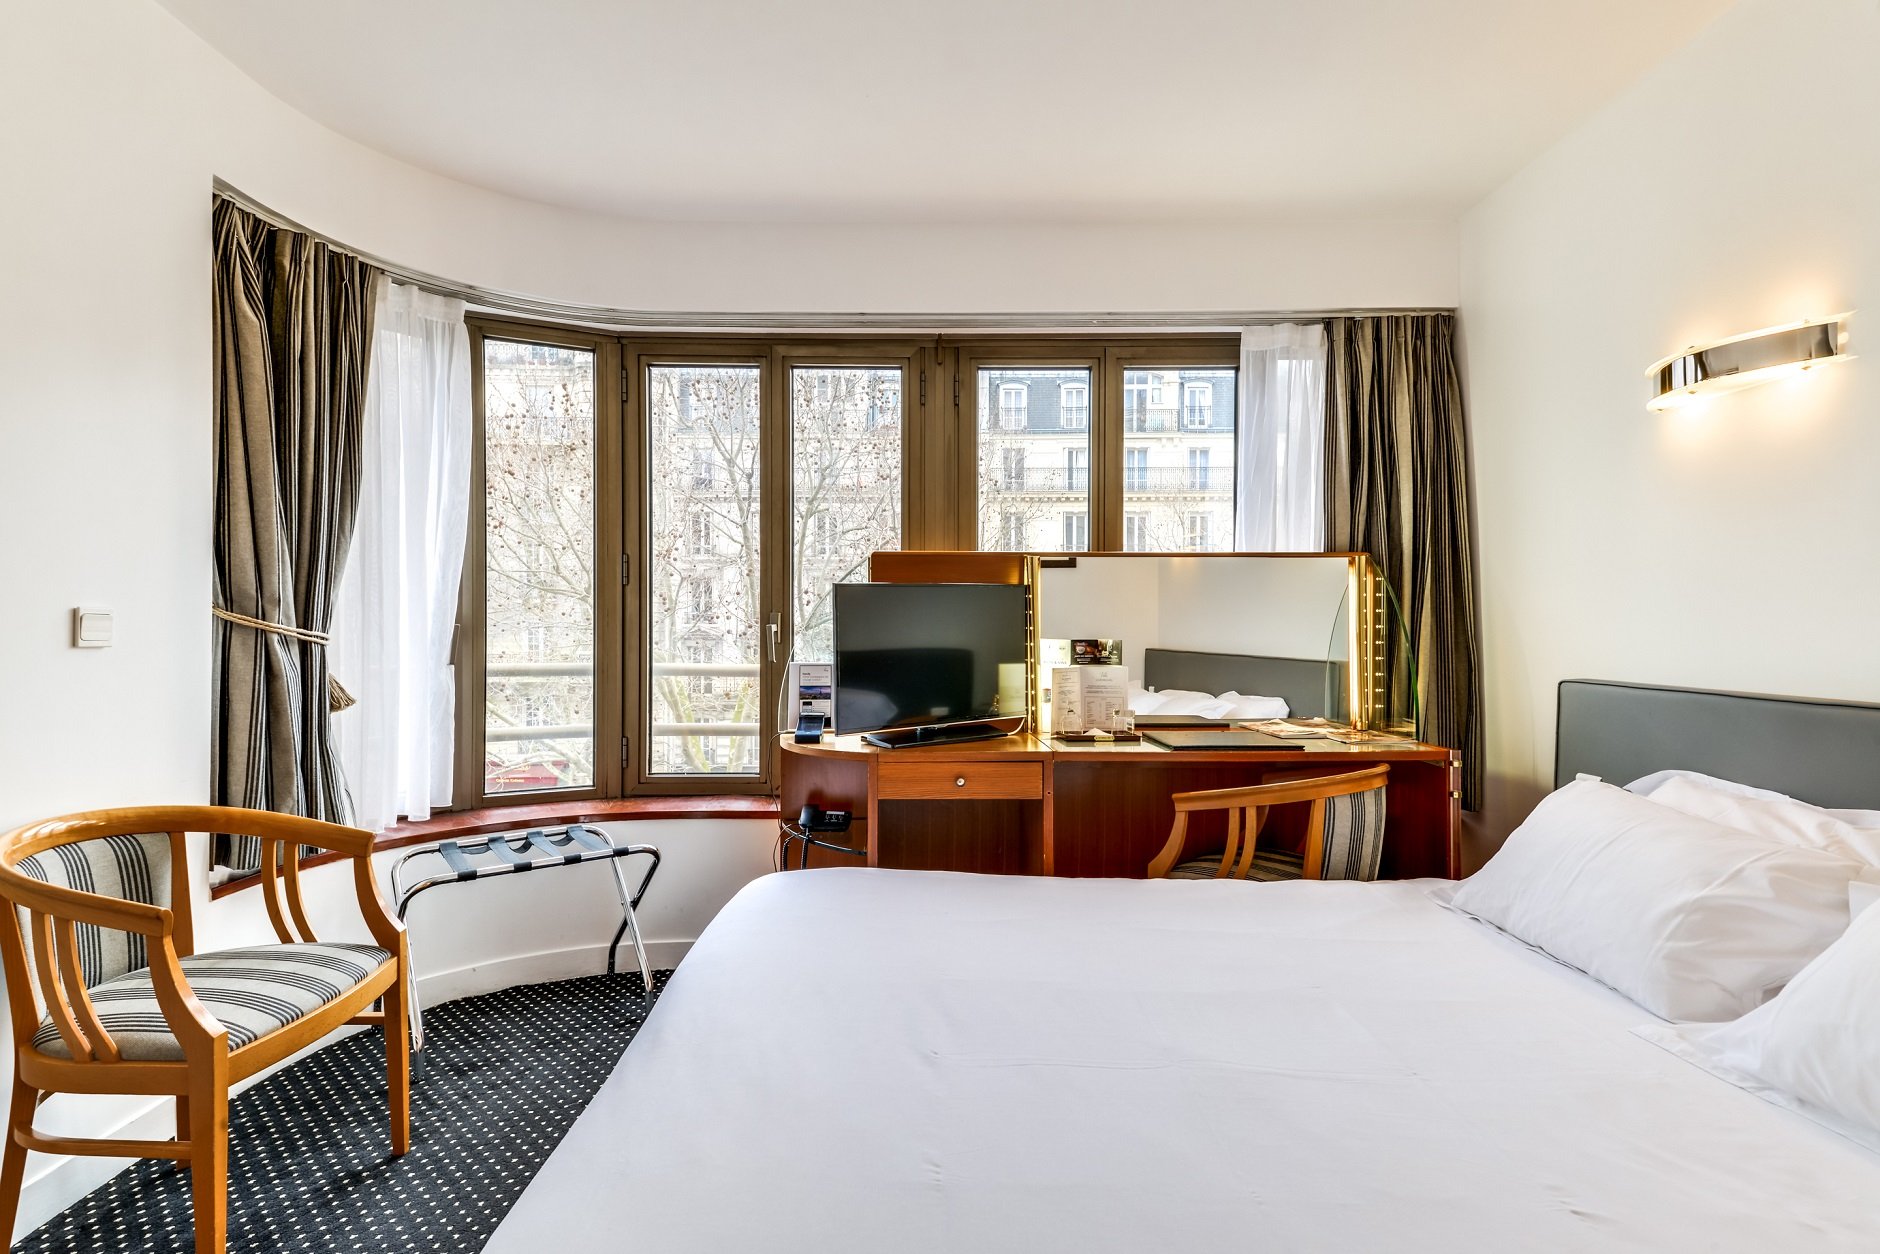 57/Chambres/4star-hotel-Montparnasse-Tower.jpg